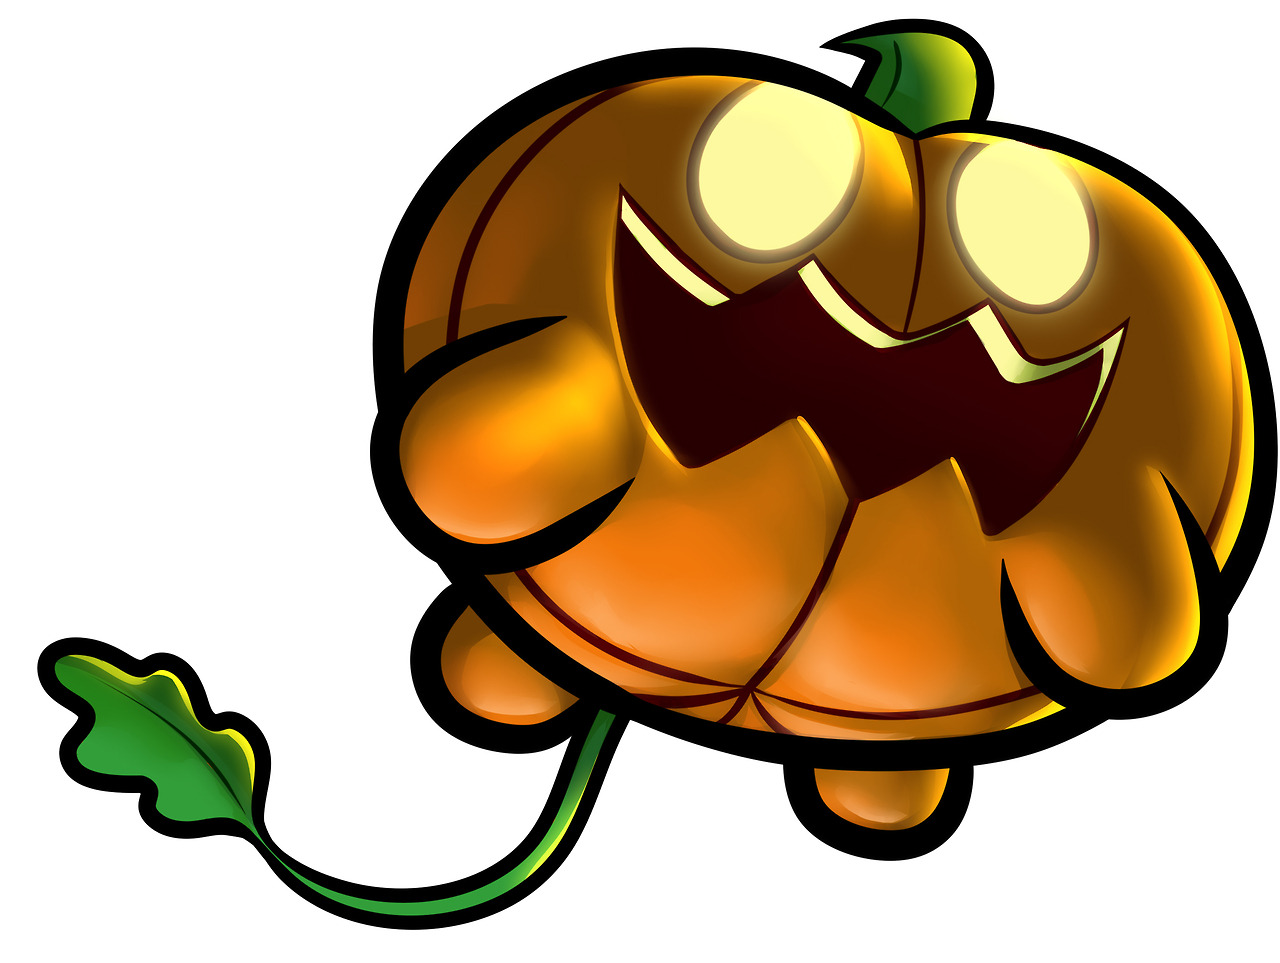 Pumpkin (Steven Universe) wishes everyone a happy hallowe’en!